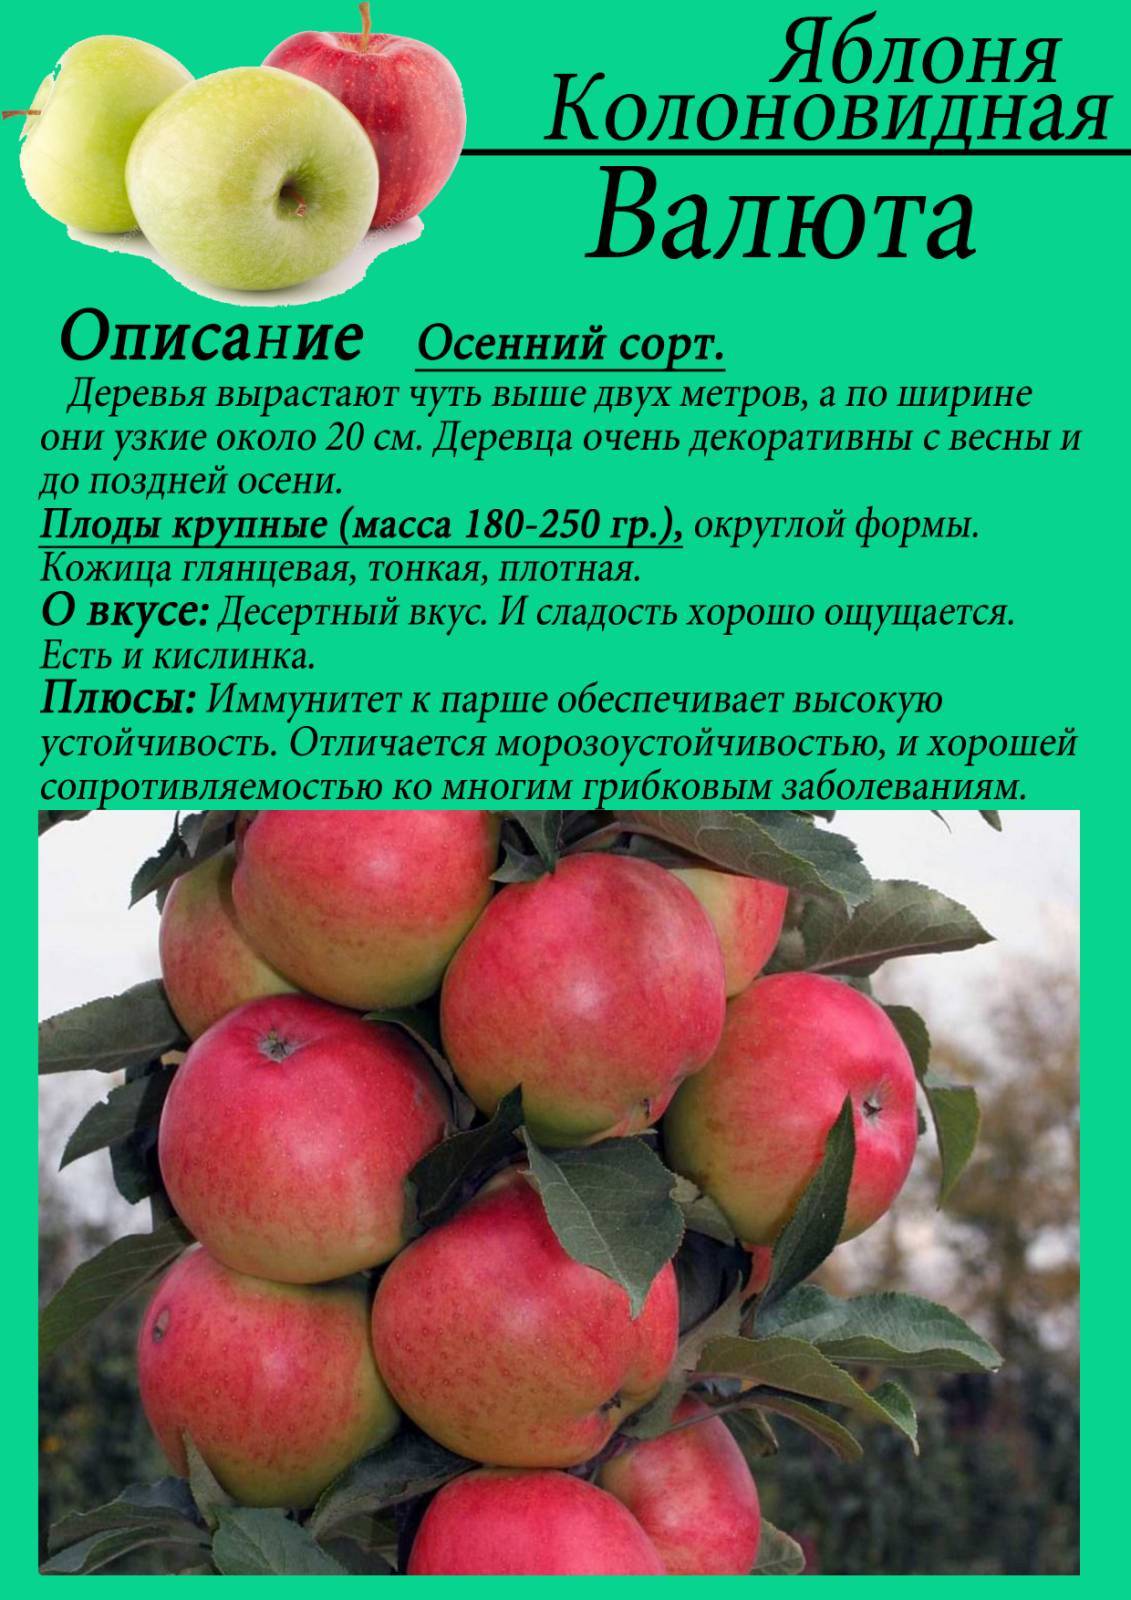 Описание сорта яблони елена: фото яблок, важные характеристики, урожайность с дерева